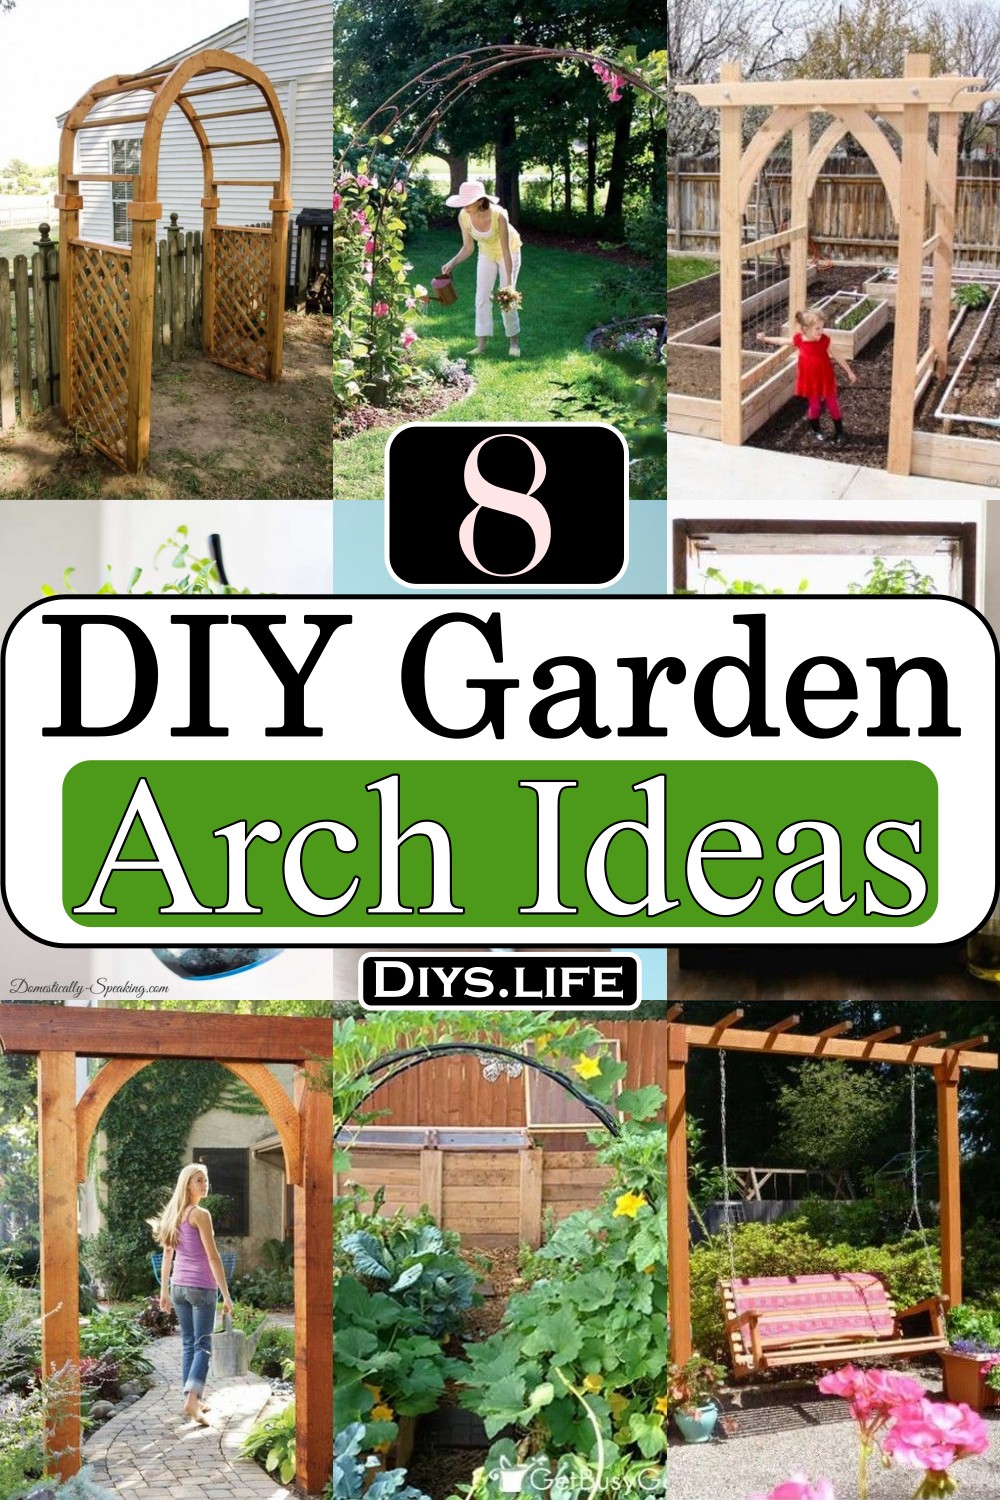 DIY Garden Arch Ideas